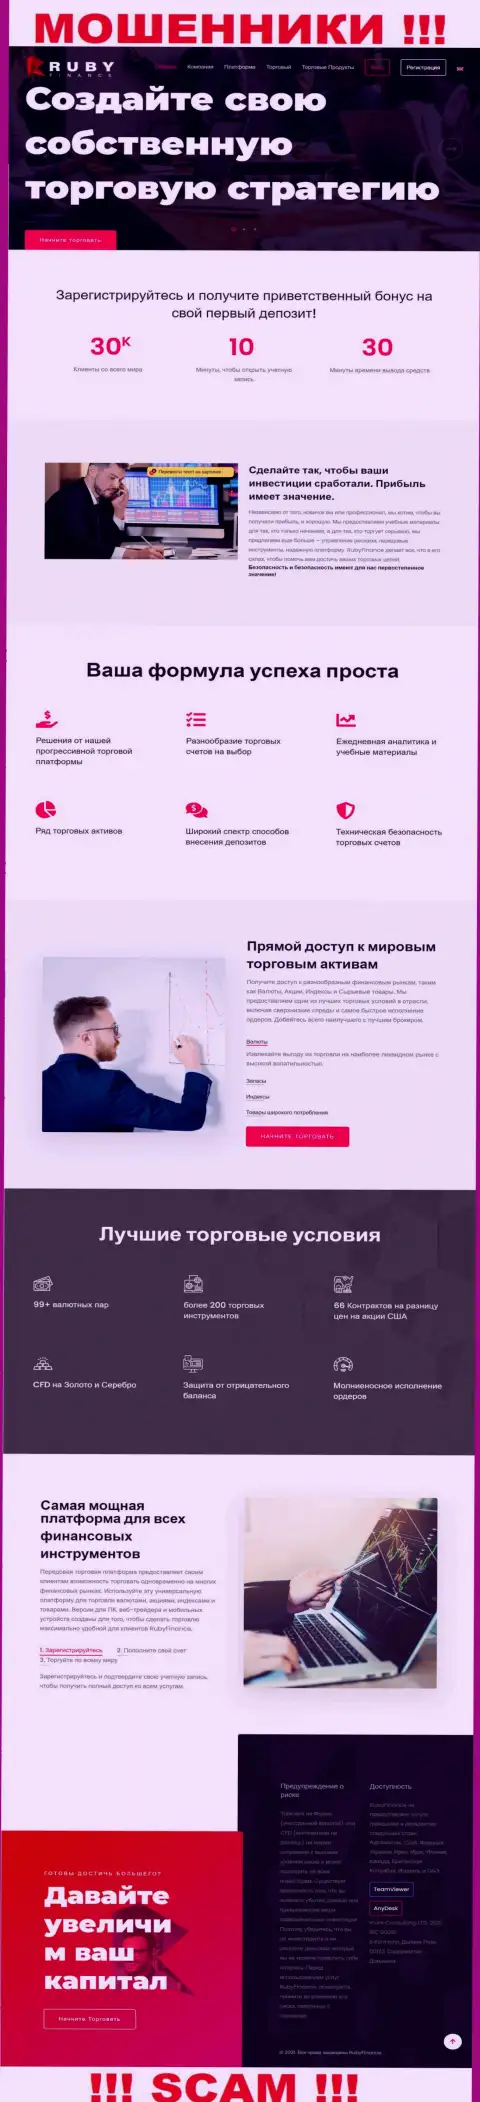 Официальный интернет-портал мошенников РубиФинанс, забитый инфой для лохов